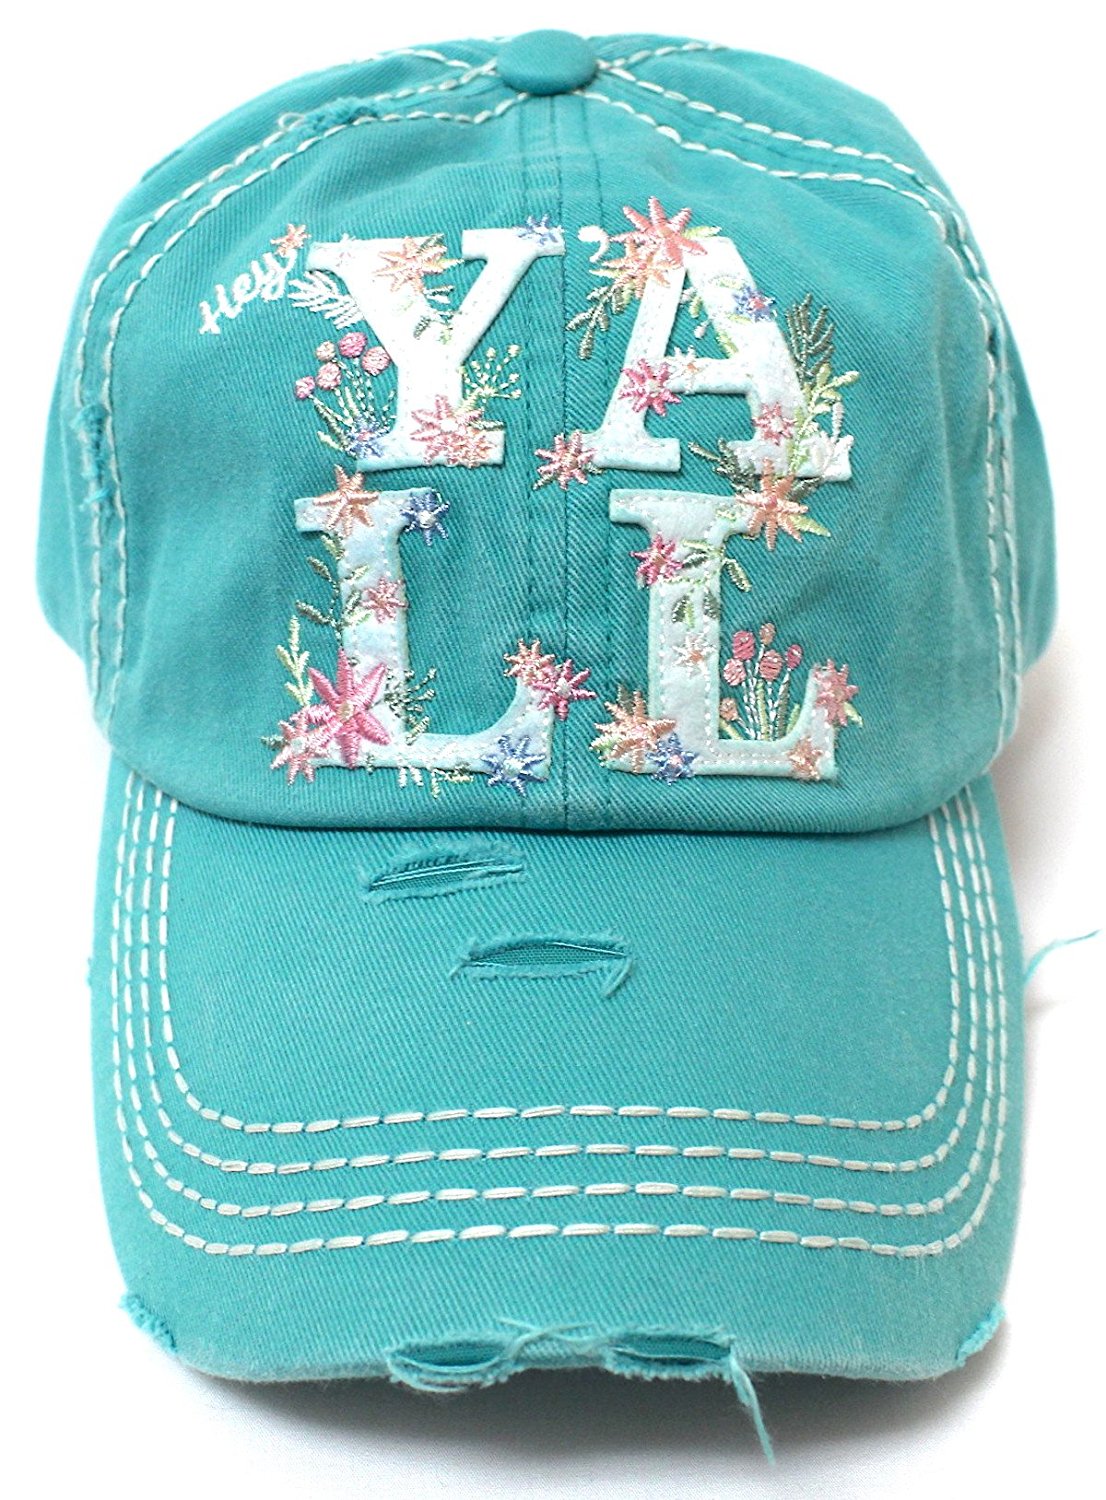 CAPS 'N VINTAGE New!! Women's Hey Y'all Spring Floral Cap-Turquoise - Caps 'N Vintage 